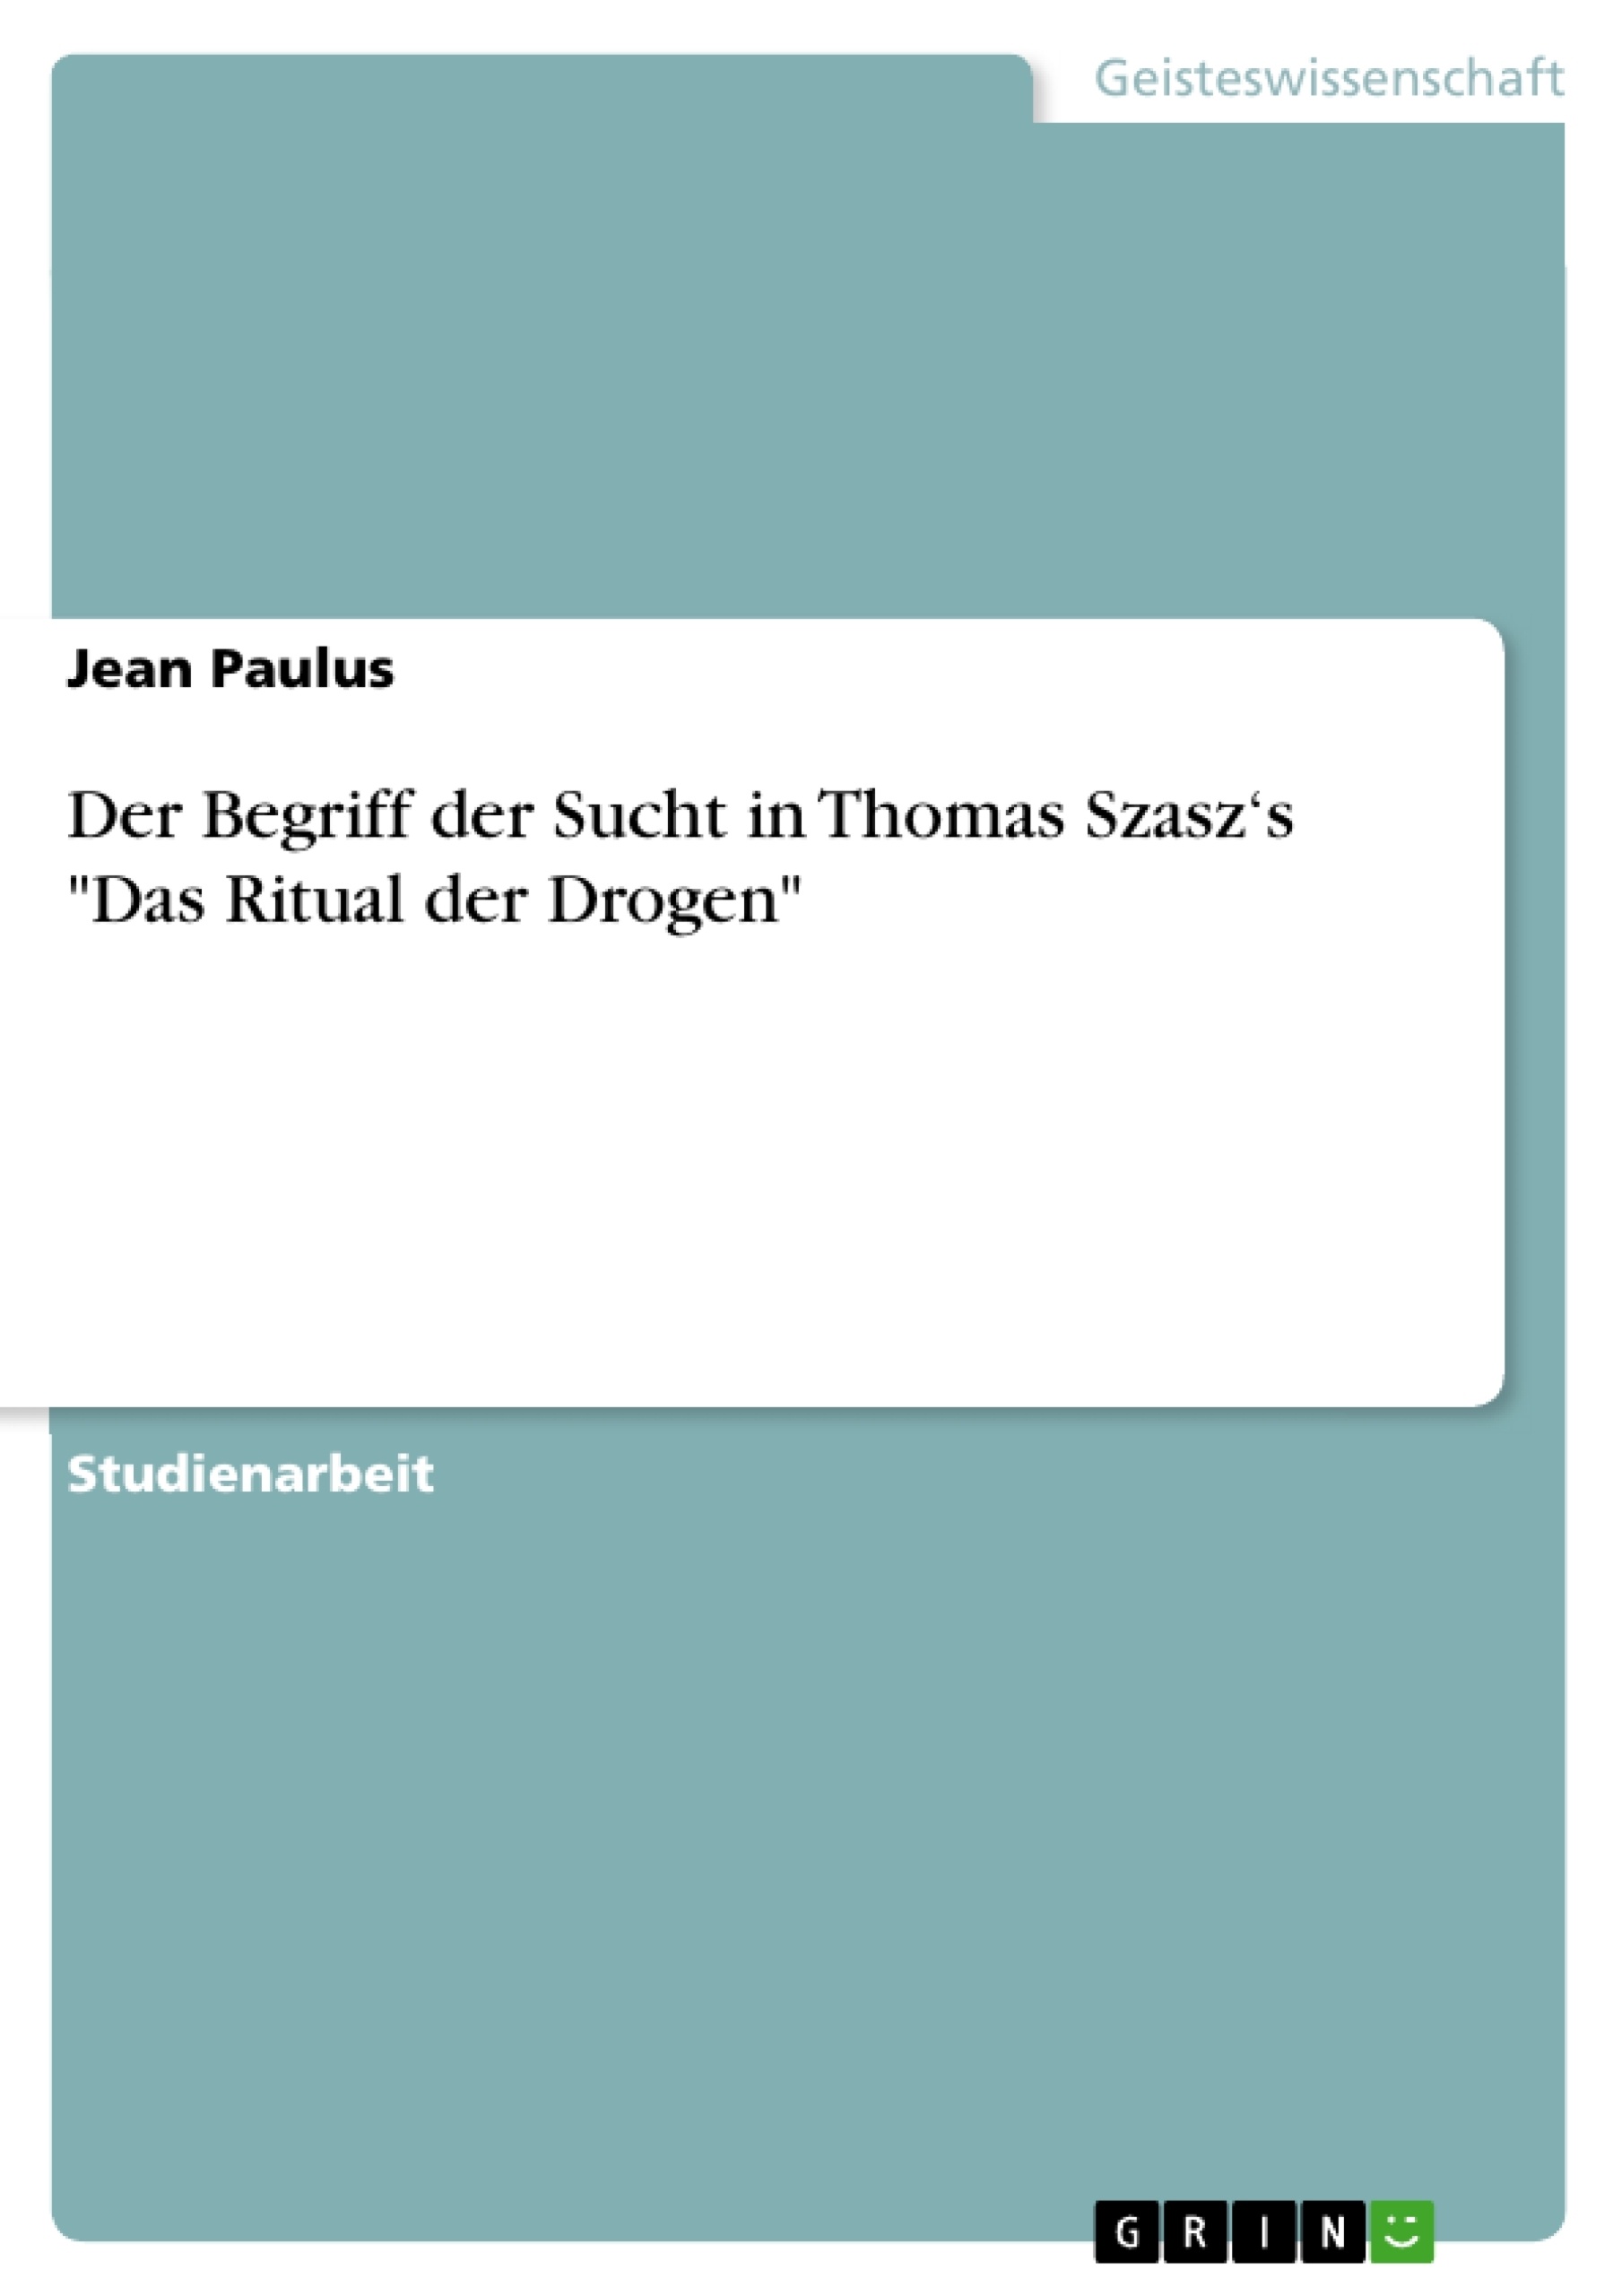 Title: Der Begriff der Sucht in Thomas Szasz‘s "Das Ritual der Drogen"